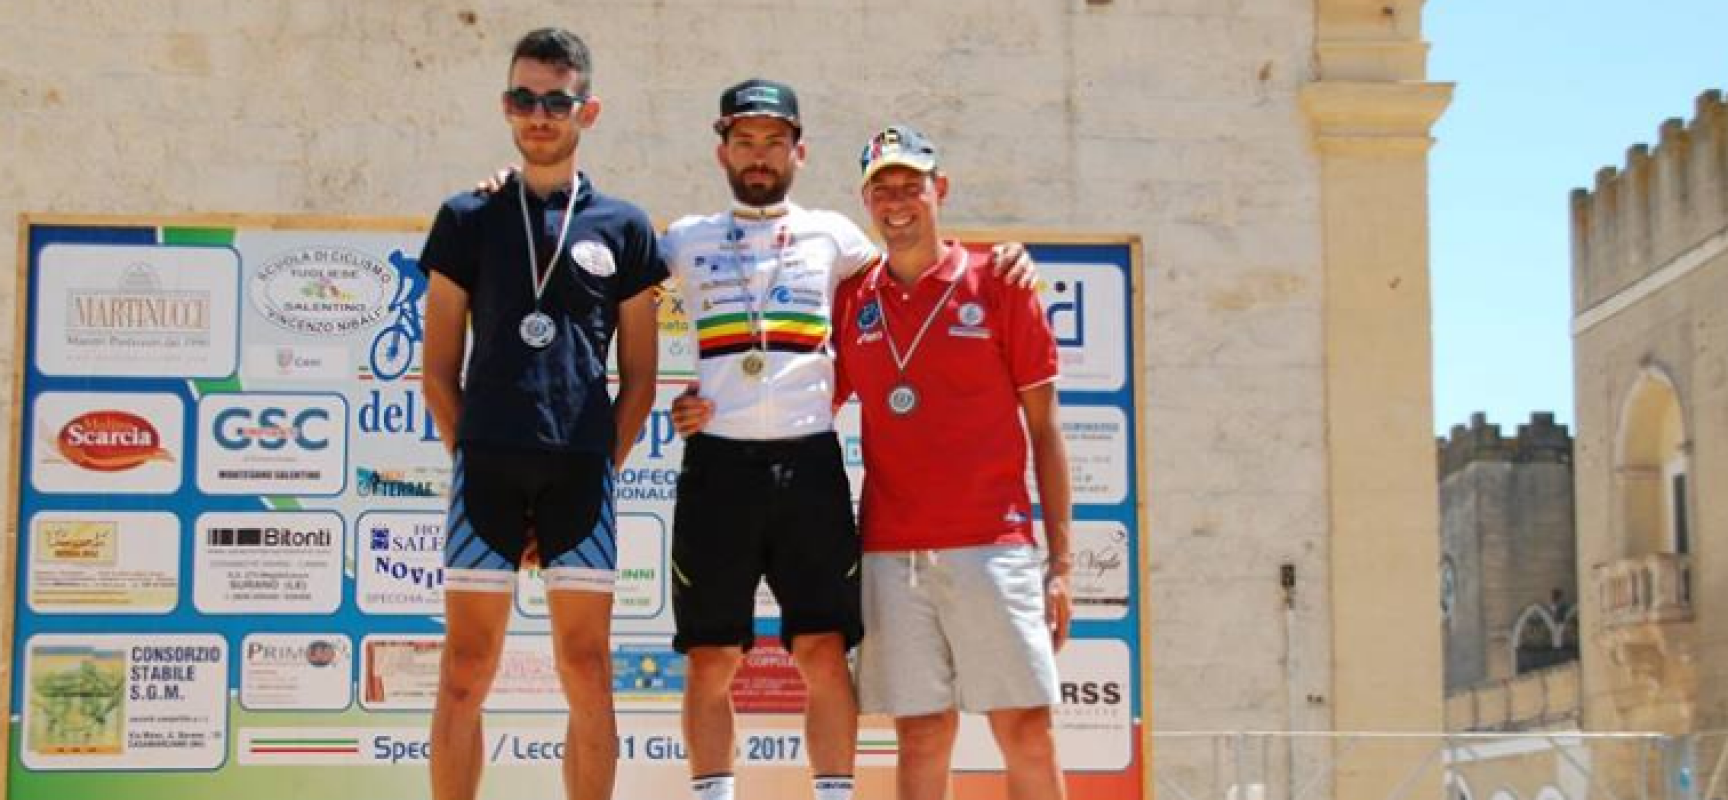 Ciclismo: Cavallaro, tre titoli regionali nella gara Cross country di Specchia